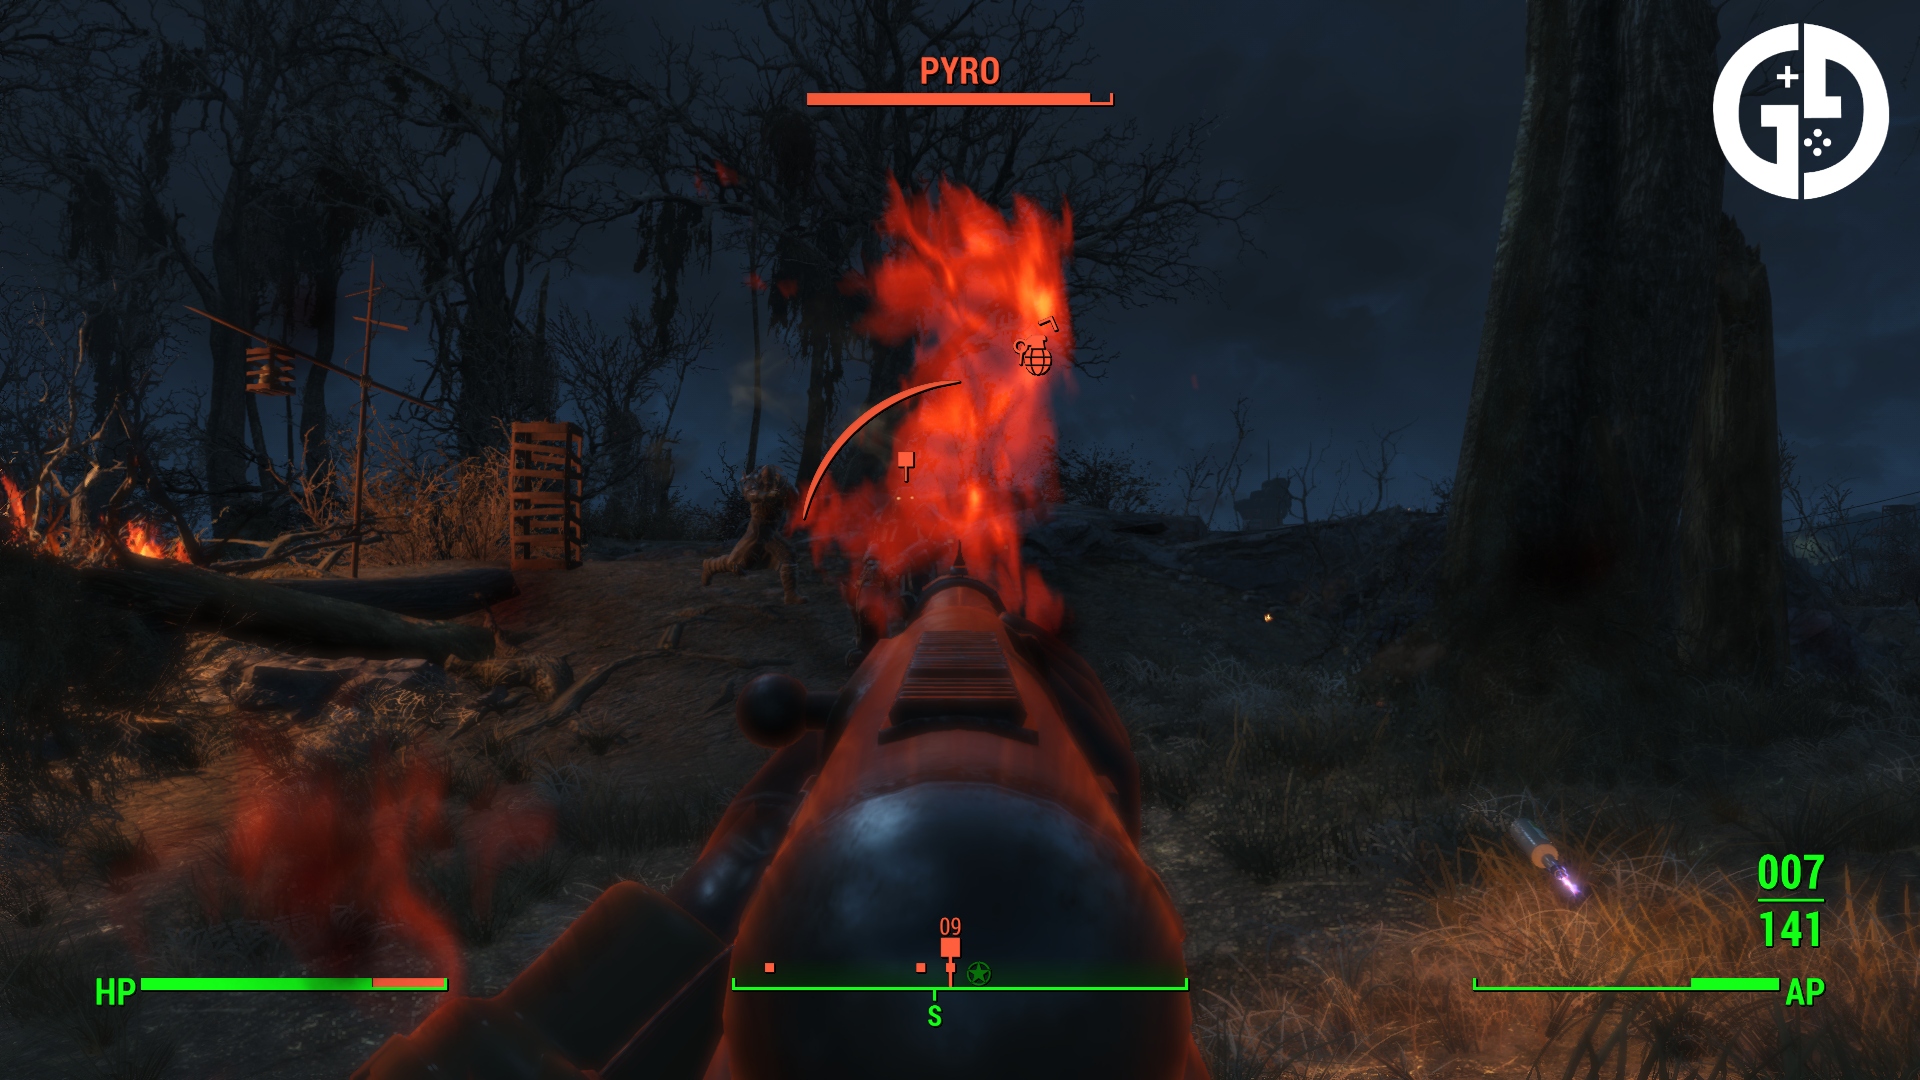 Как получить силовую броню «Адское пламя» Fallout 4 по квесту «Пироман»